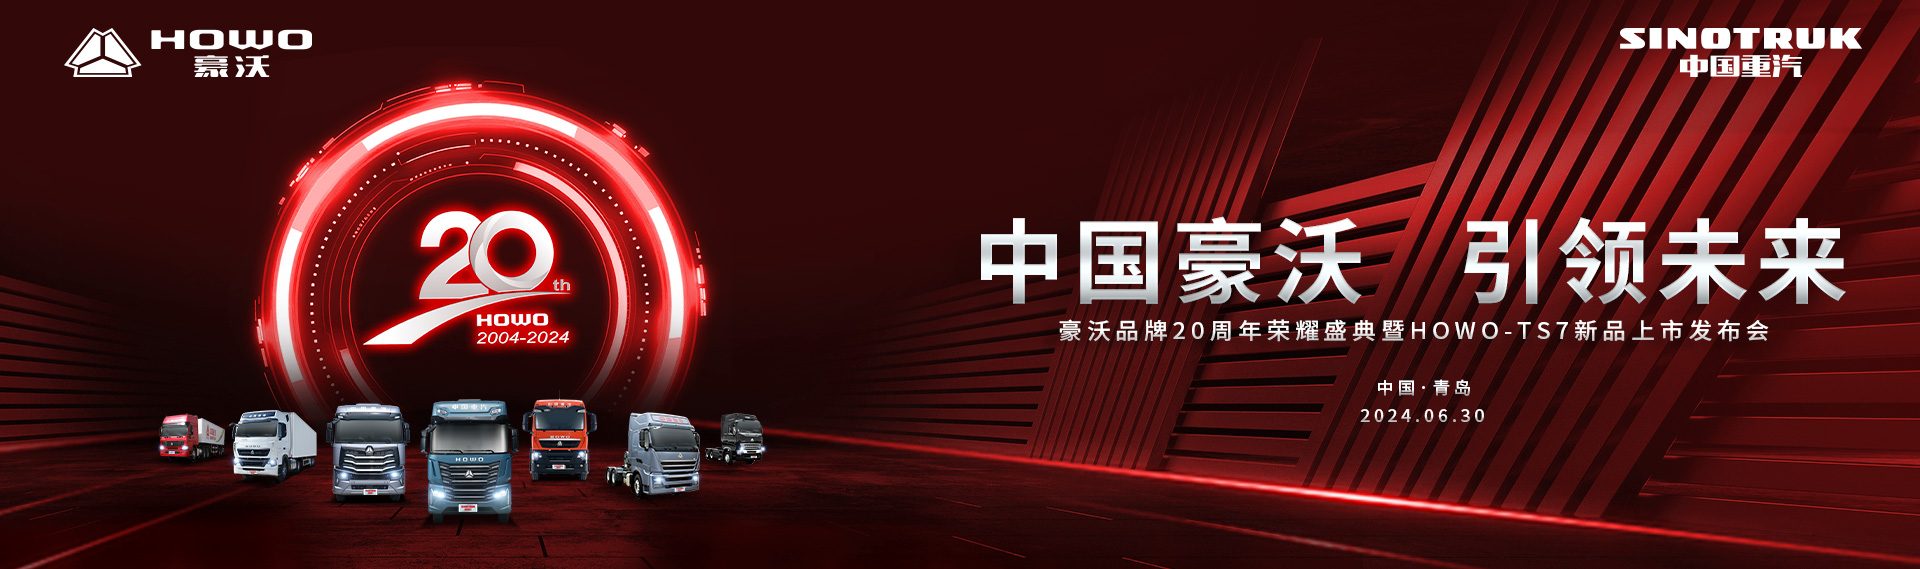 中国重汽豪沃品牌20周年荣耀盛典暨HOWO-TS7新品上市发布会